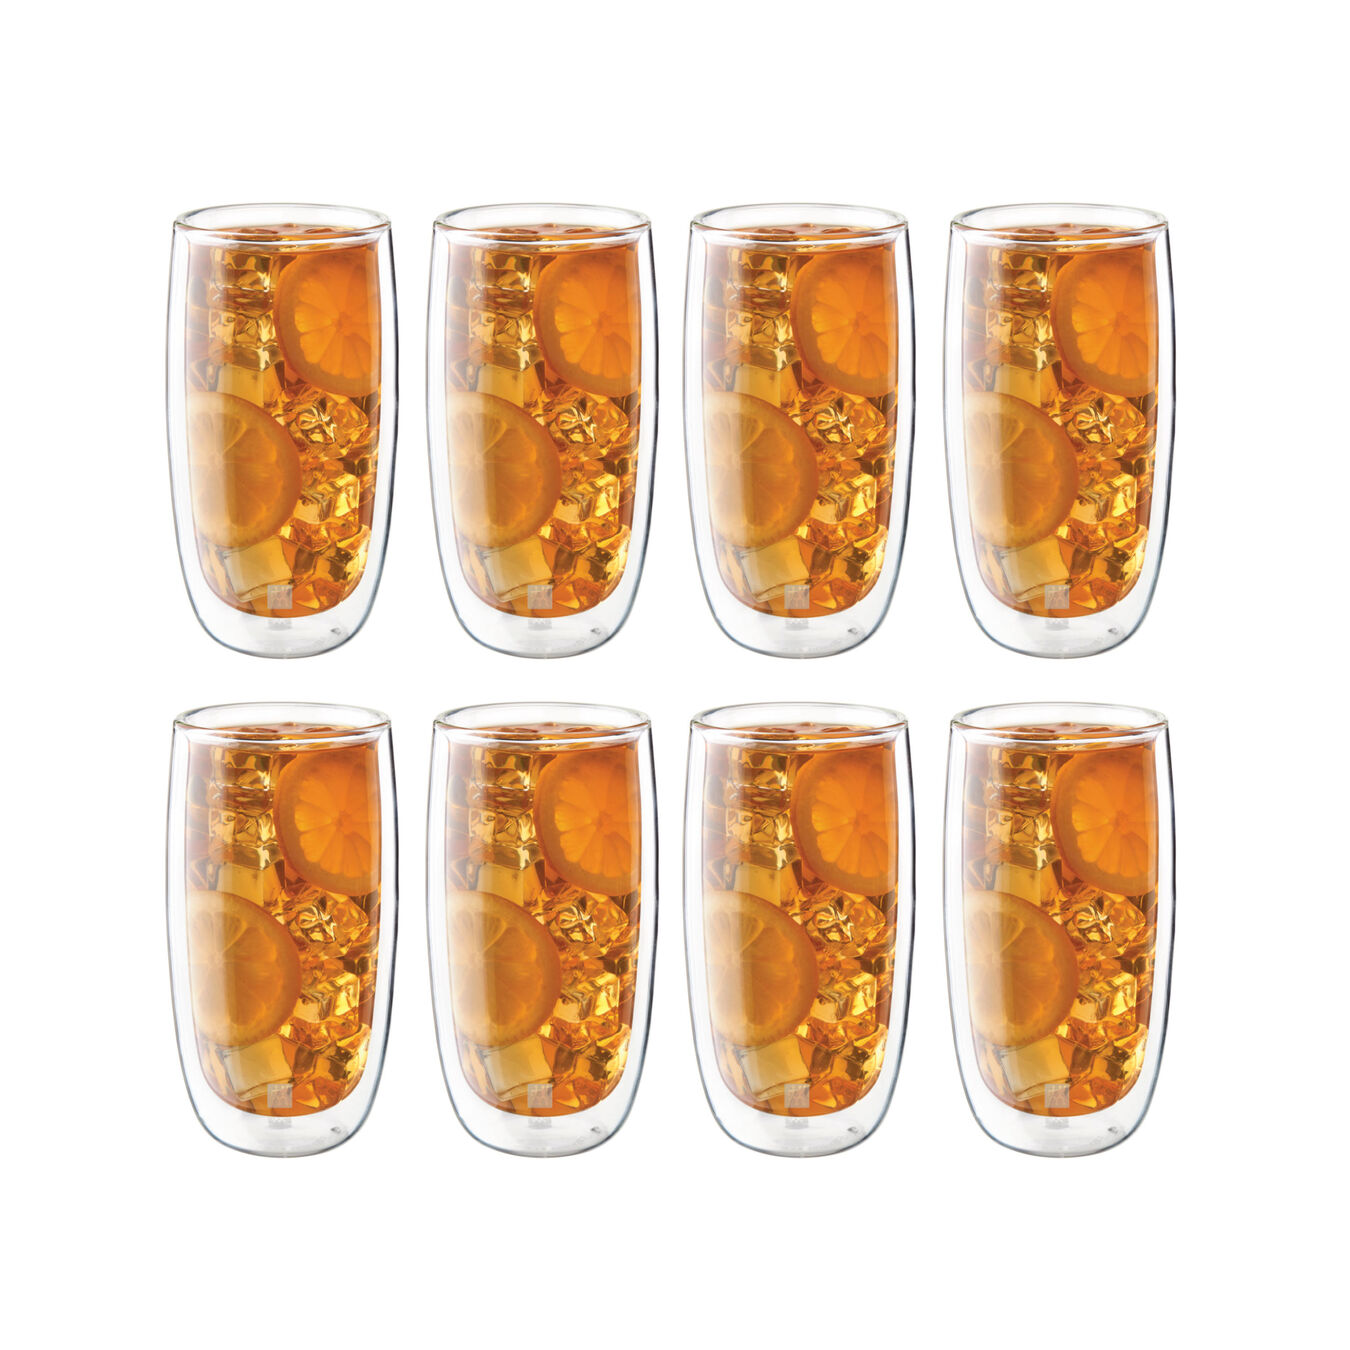 8 Piece Beverage Glass Set - Value Pack,,large 2